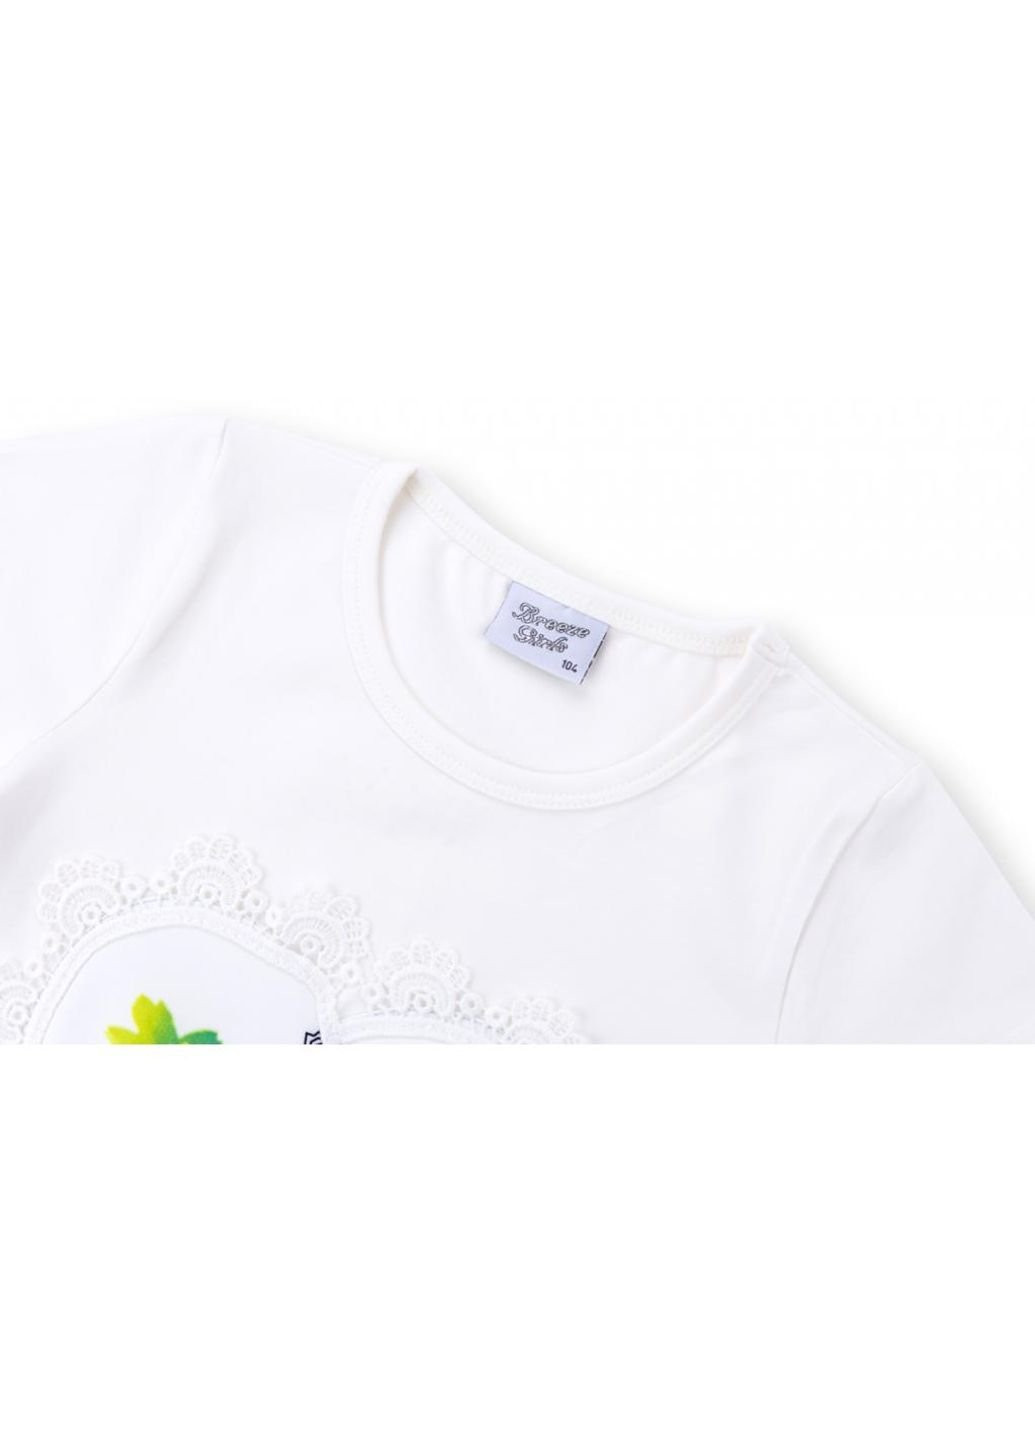 Біла демісезонна футболка дитяча з вежею (8326-116g-white) Breeze